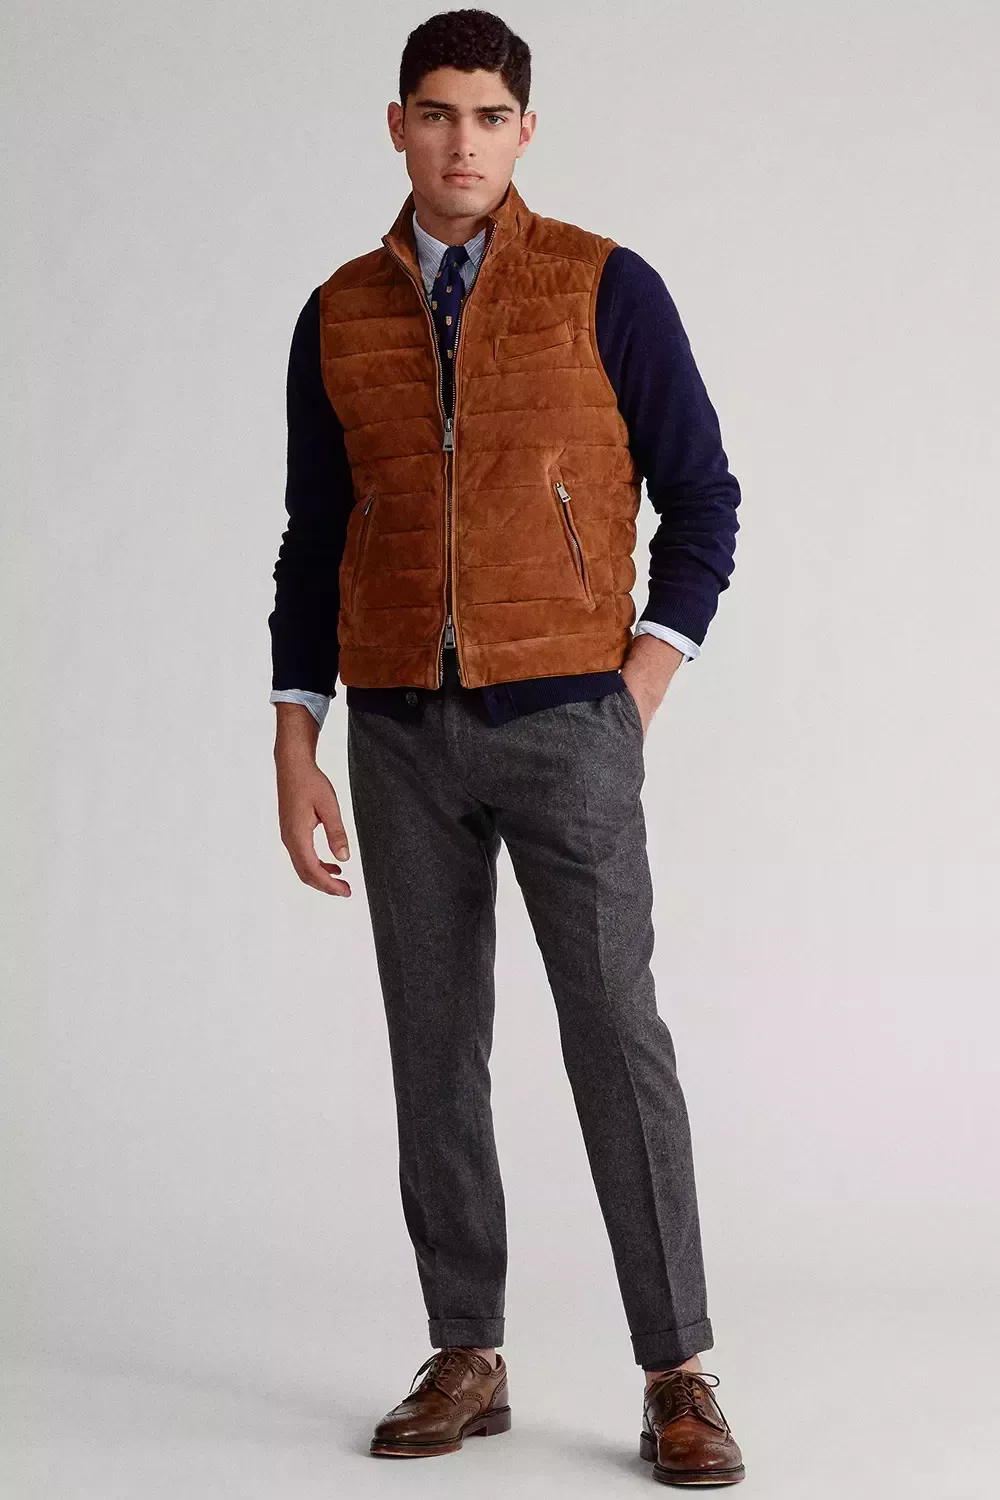 Cómo llevar una chaqueta de ante: 6 sofisticados conjuntos para hombres